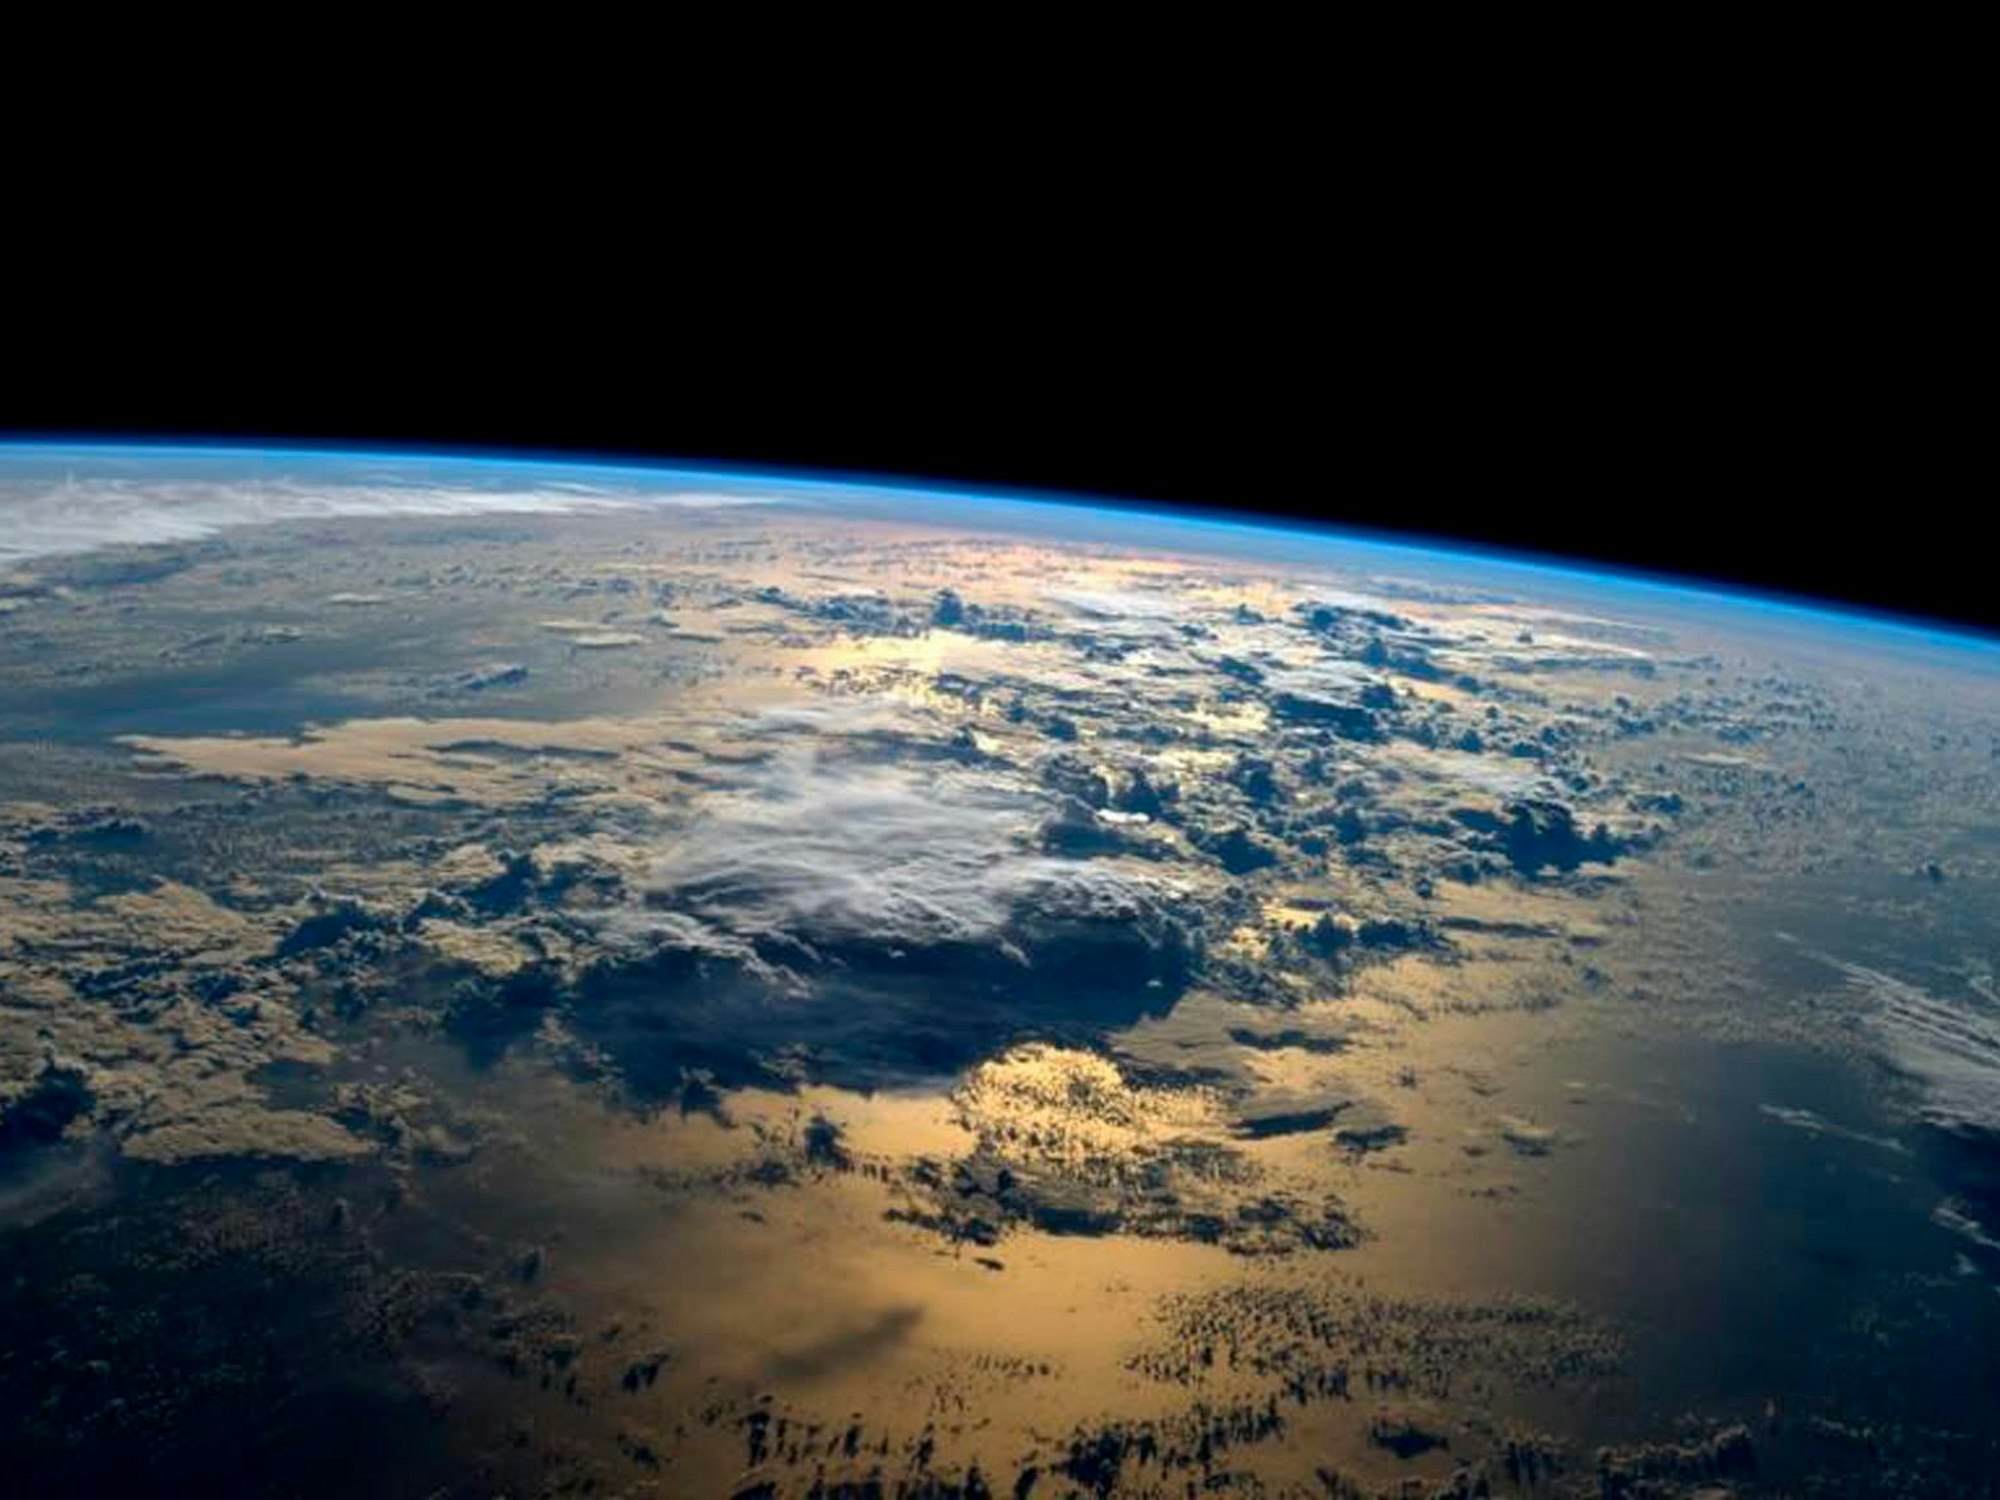 Ein von der NASA am 4. September 2014 zur Verfügung gestelltes Handout-Bild zeigt eine Ansicht der Erde, aufgenommen vom NASA-Astronauten Gregory Reid Wiseman aus den USA von der Internationalen Raumstation (ISS) im Weltraum.